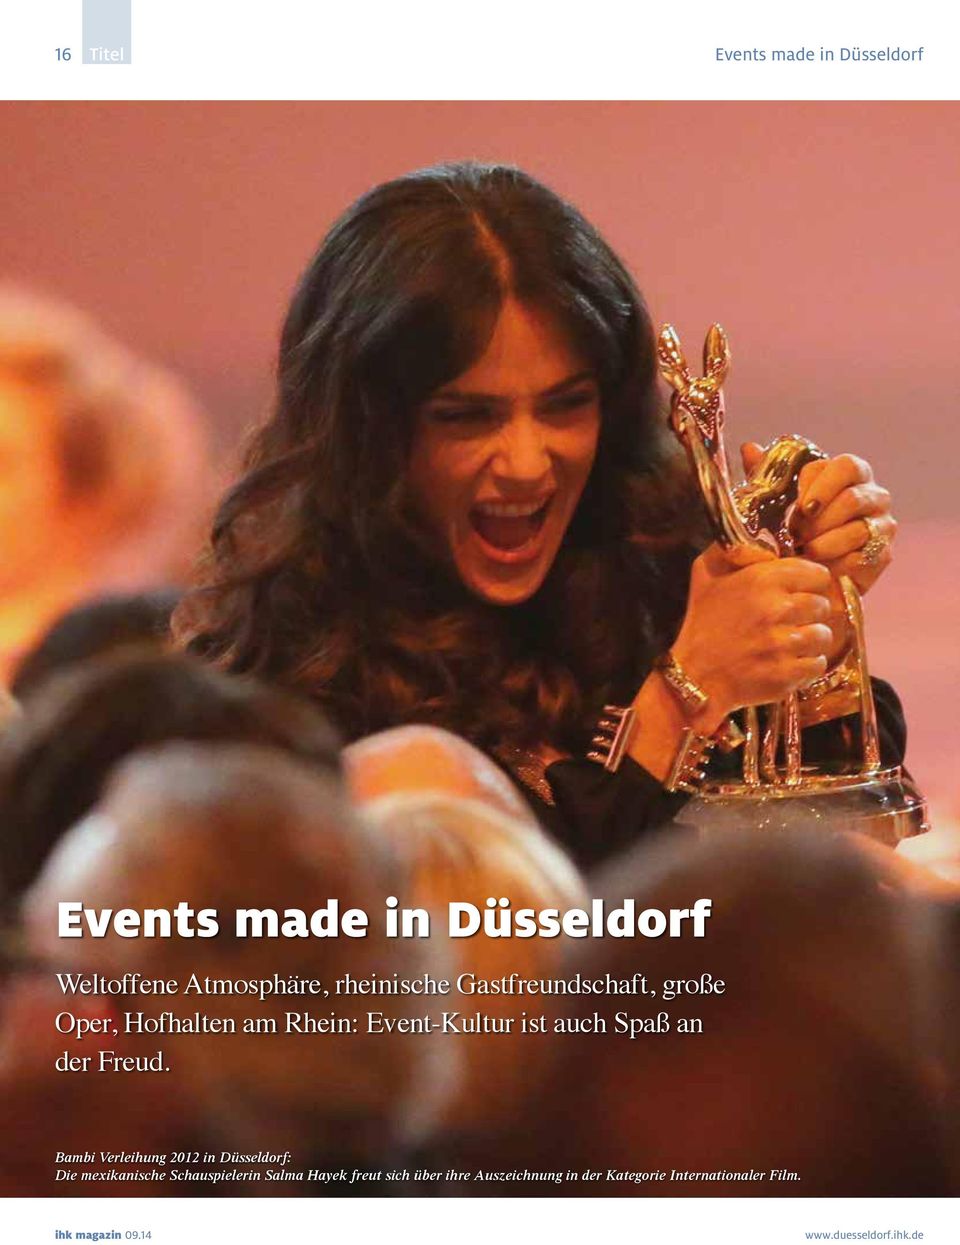 Bambi Verleihung 2012 in Düsseldorf: Die mexikanische Schauspielerin Salma Hayek freut sich